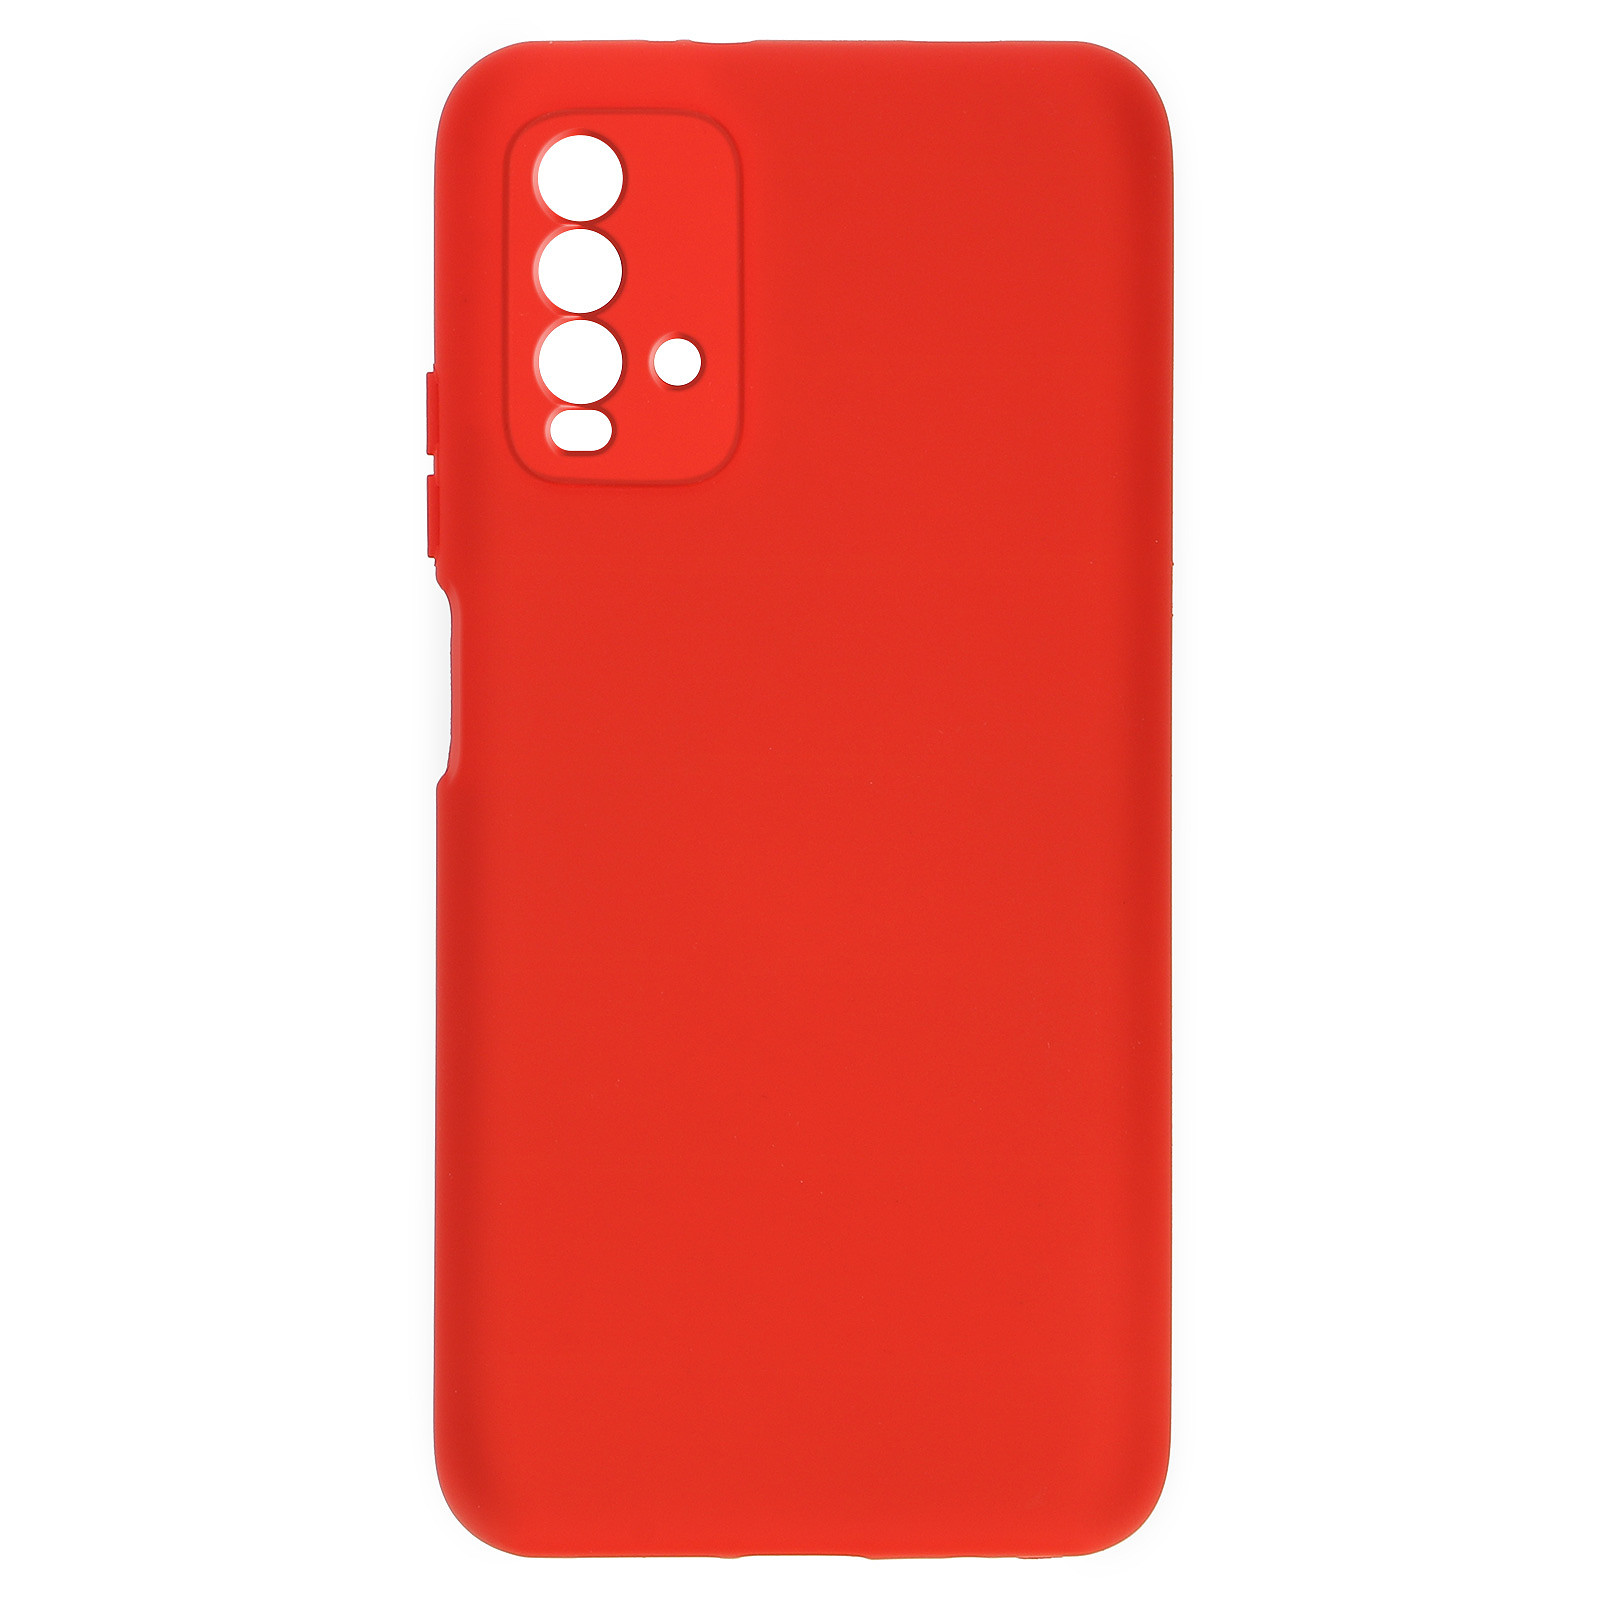 Avizar Coque pour Xiaomi Redmi 9T Silicone Semi-rigide Finition Soft Touch Fine Rouge - Coque telephone Avizar